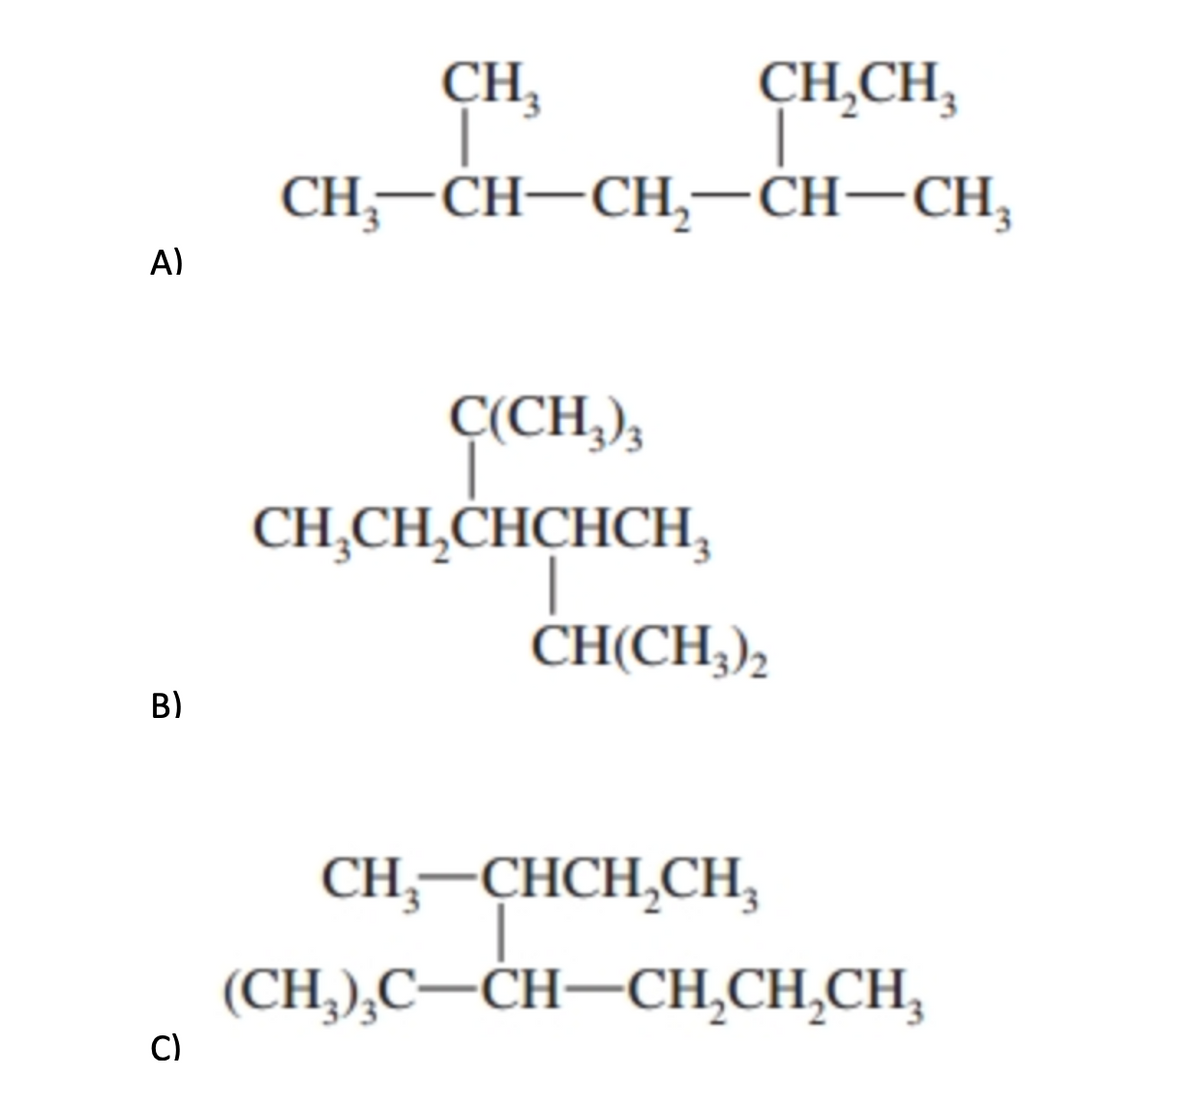 CH,
CH, —CH—CH, —СH—CH,
CH̟CH,
A)
Ç(CH,),
CH,CH,CHCHCH,
CH(CH,),
B)
CH,-CHCH,CH,
(CH,),C–CH–CH,CH,CH,
C)
